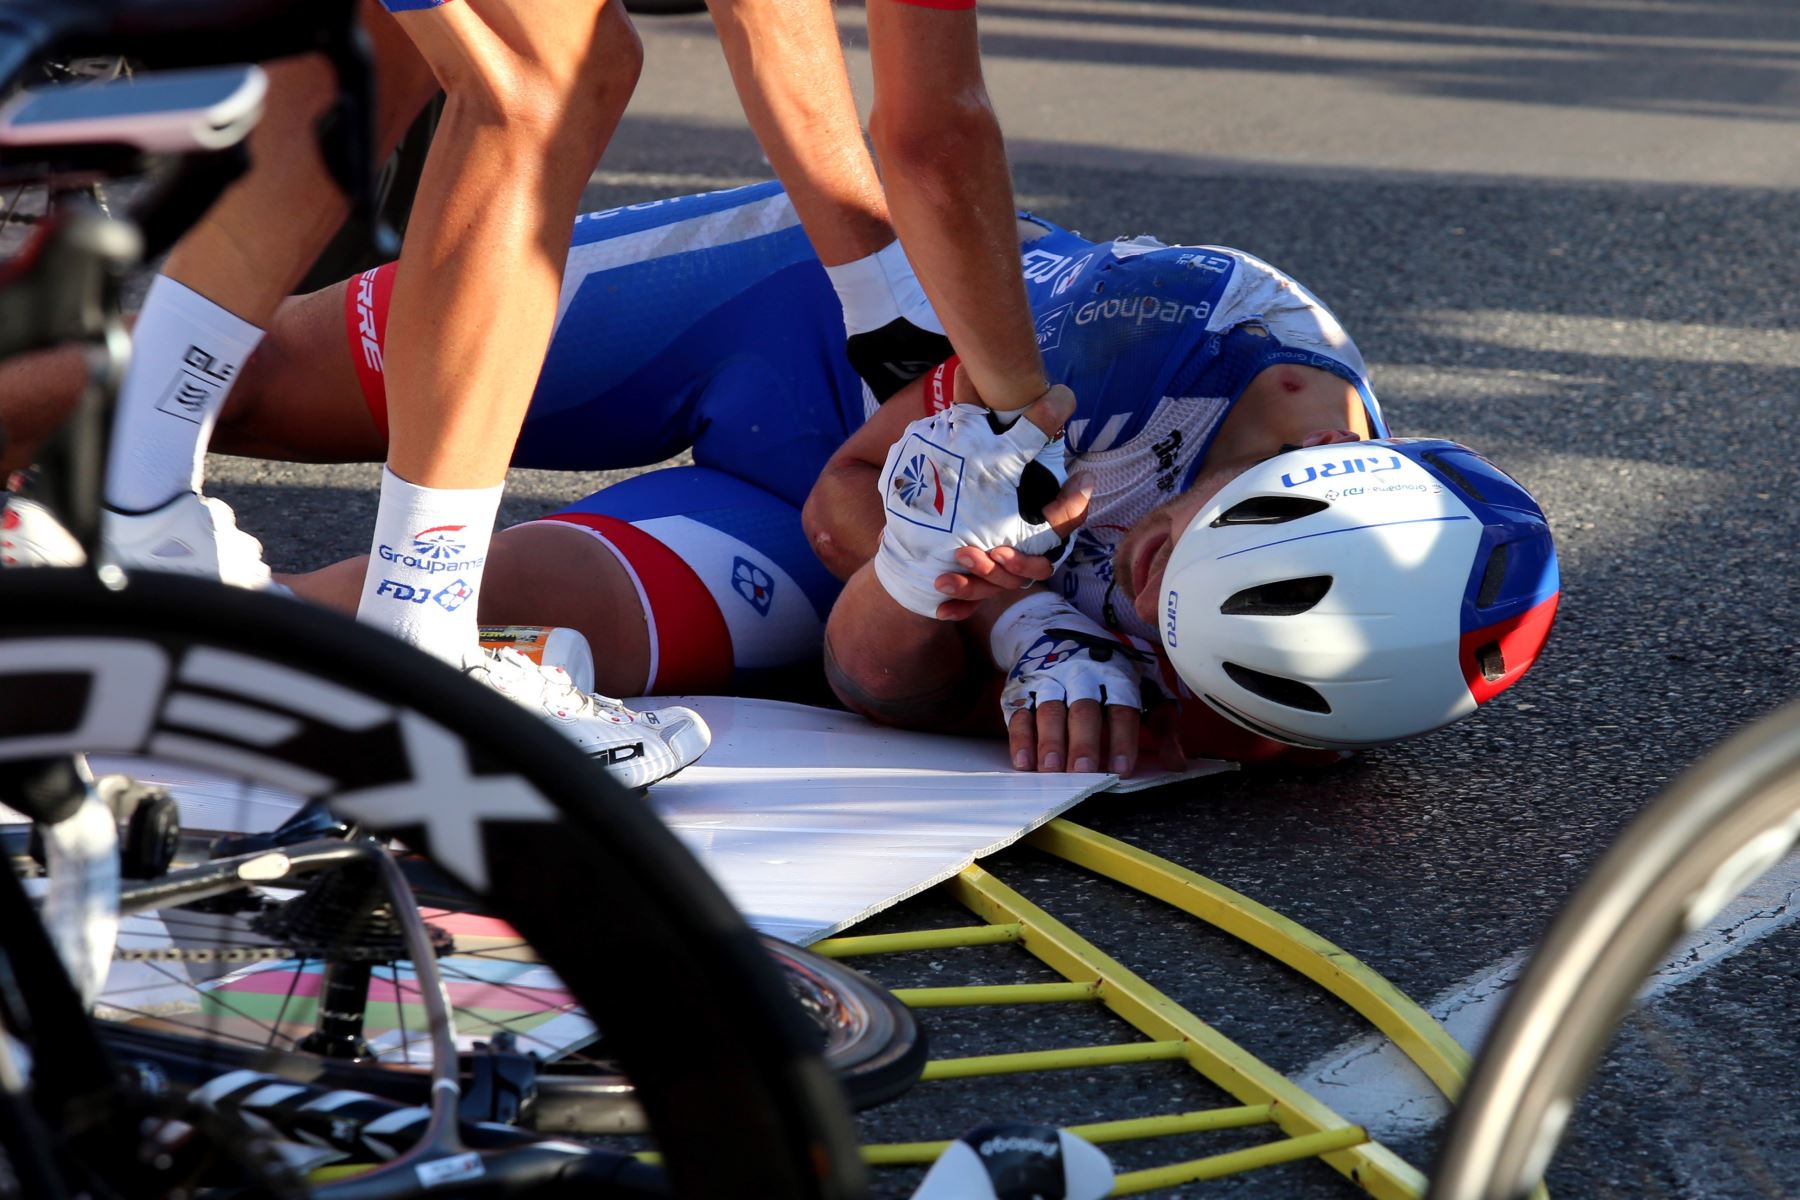 El ciclista francés Marc Sarreau del equipo Groupama reacciona después de caer en la línea de meta durante la primera etapa de la carrera ciclista Tour de Pologne, a más de 195.8 km entre Chorzow y Katowice, sur de Polonia.
Foto: EFE